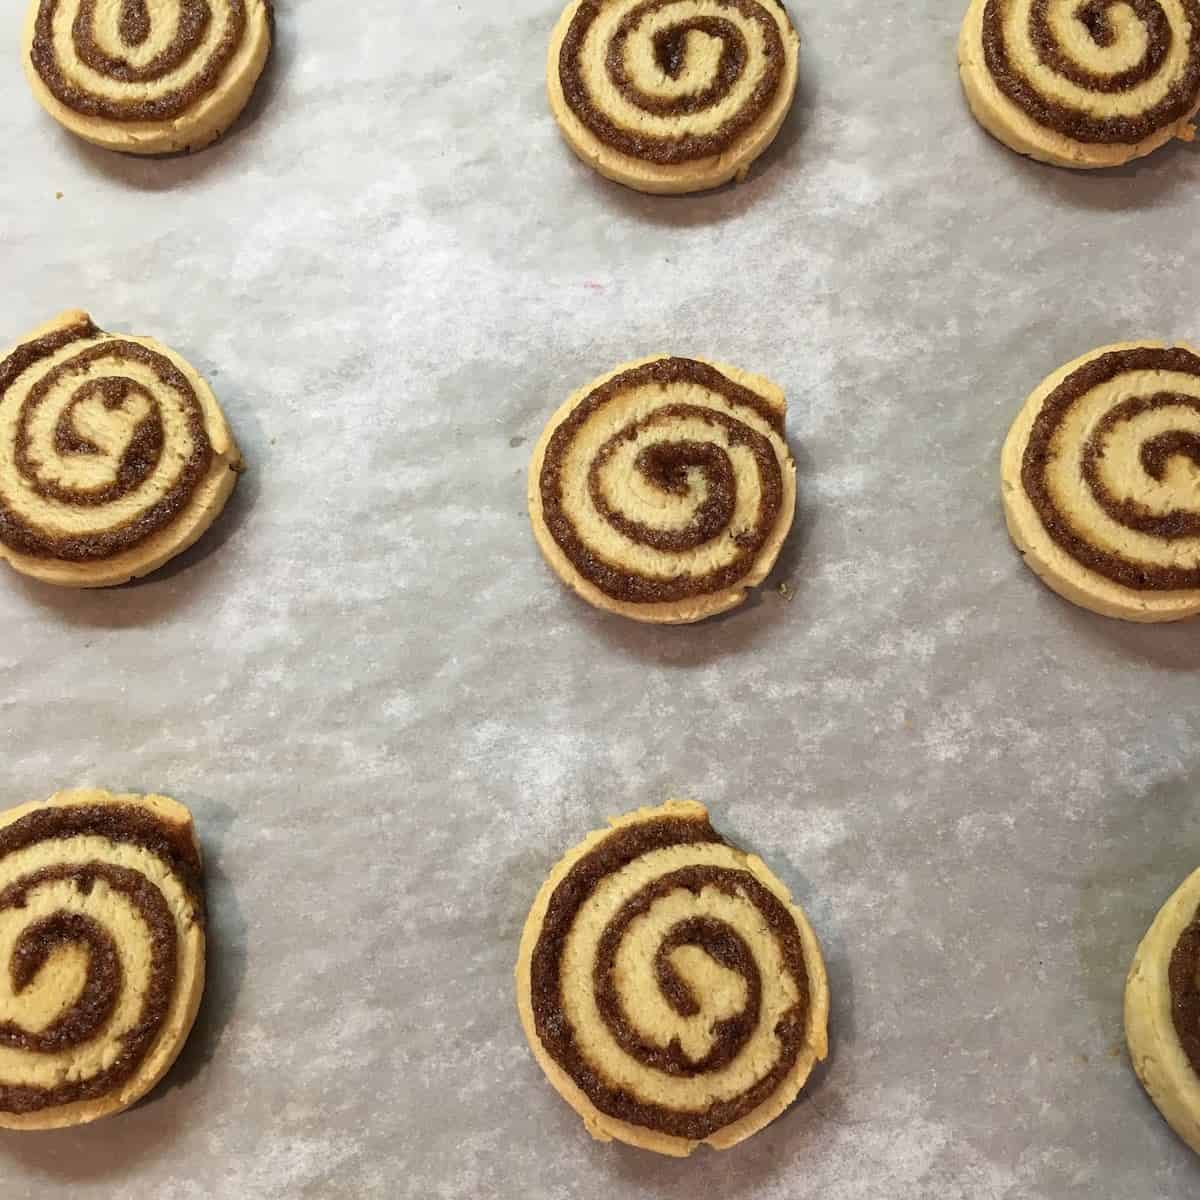 Baked cookies.